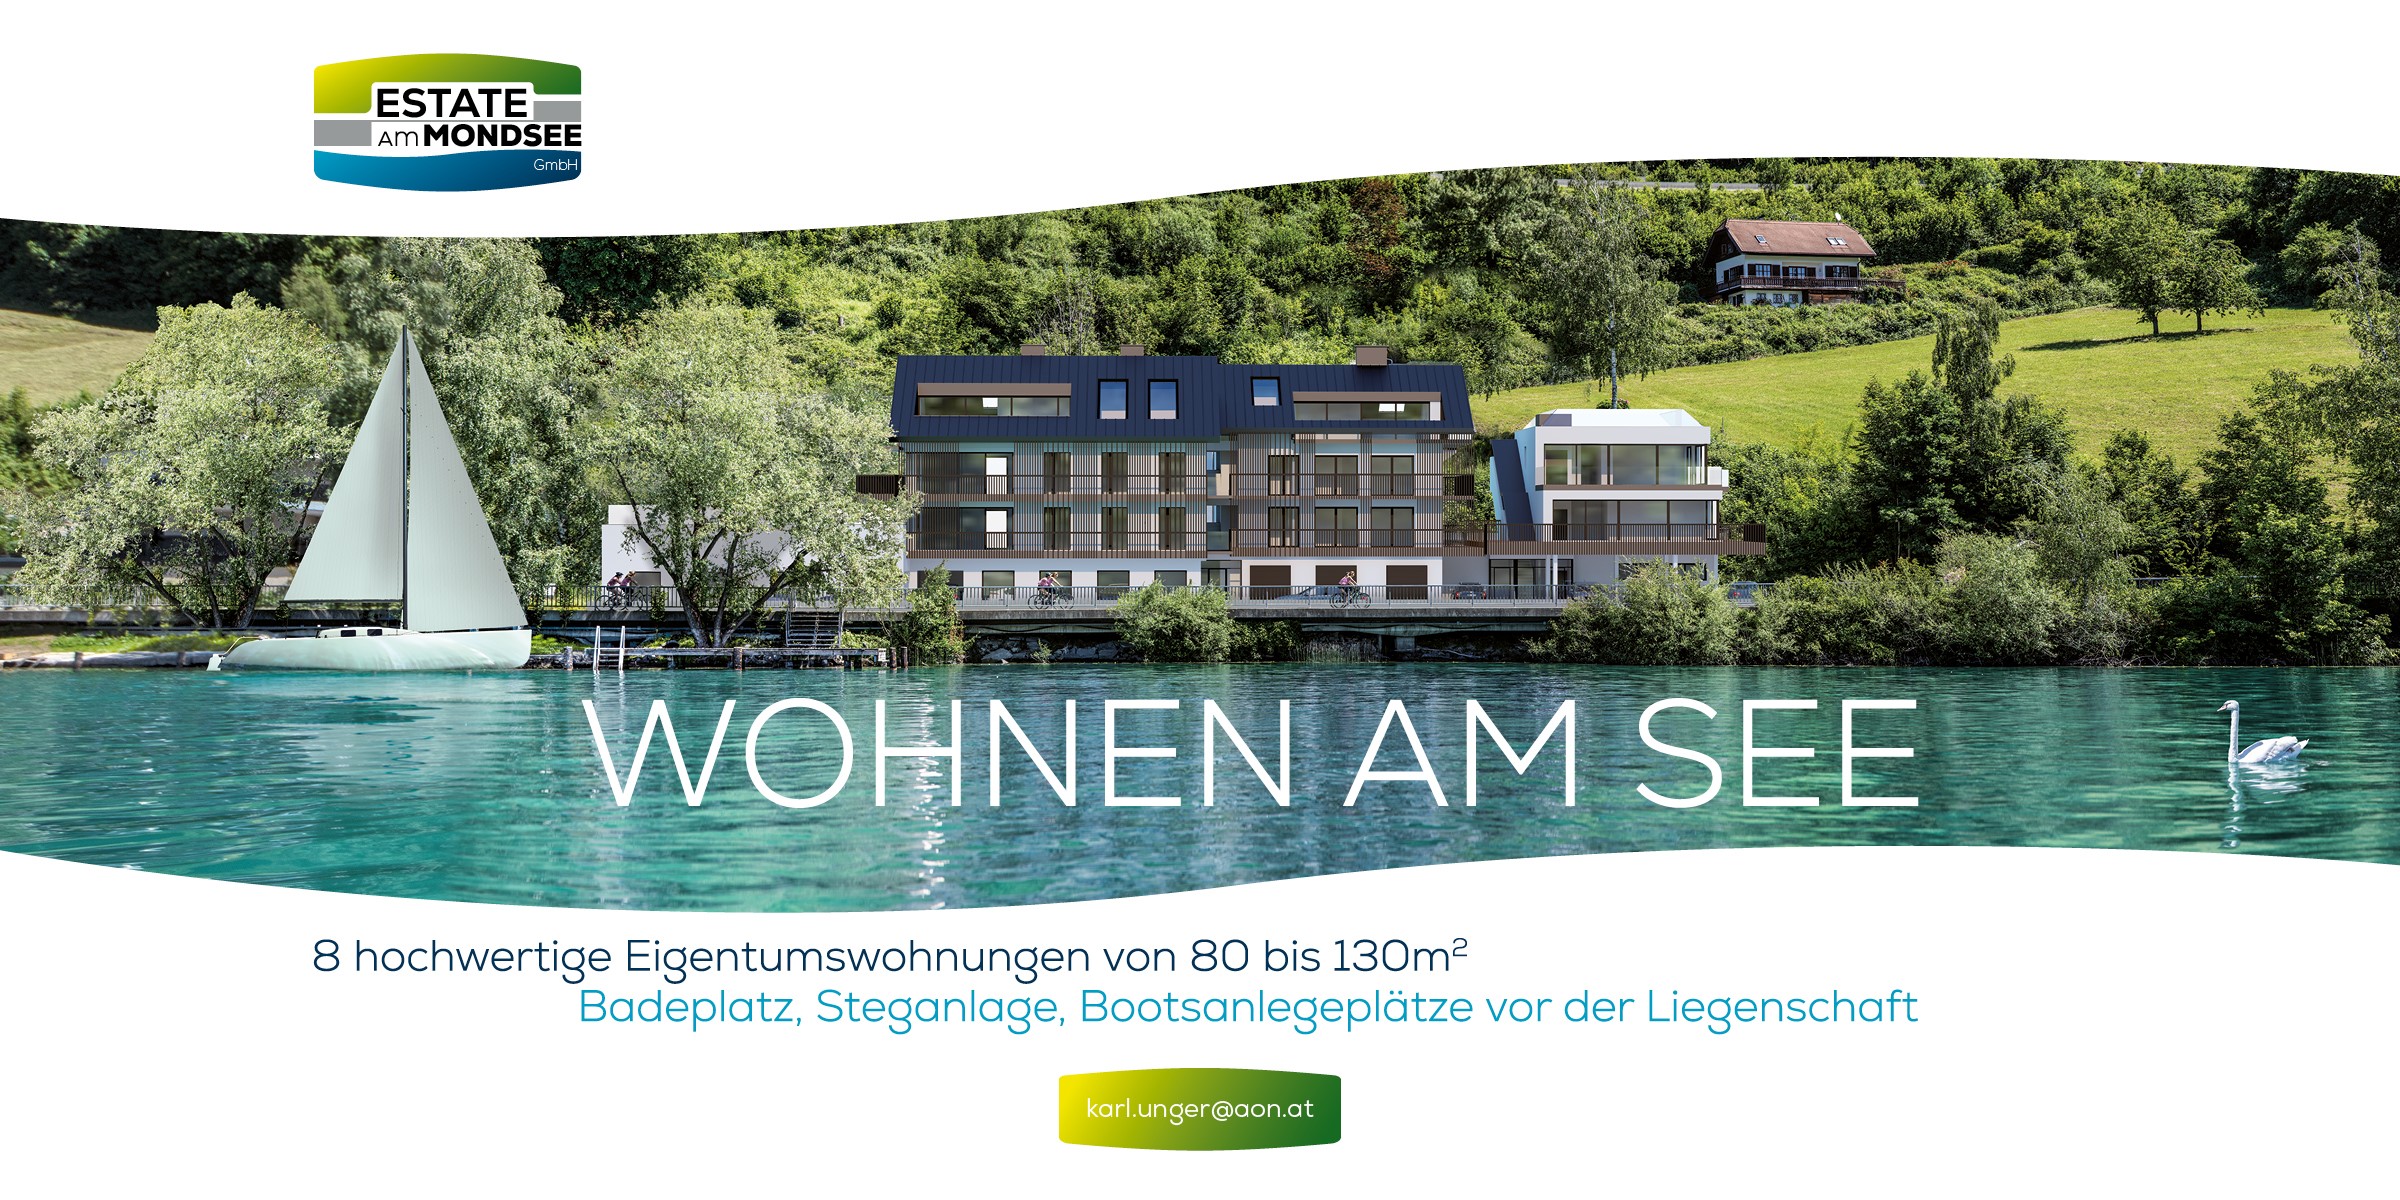 Wohnen am See - Estate am Mondsee GmbH - Kontakt: karl.unger@aon.at